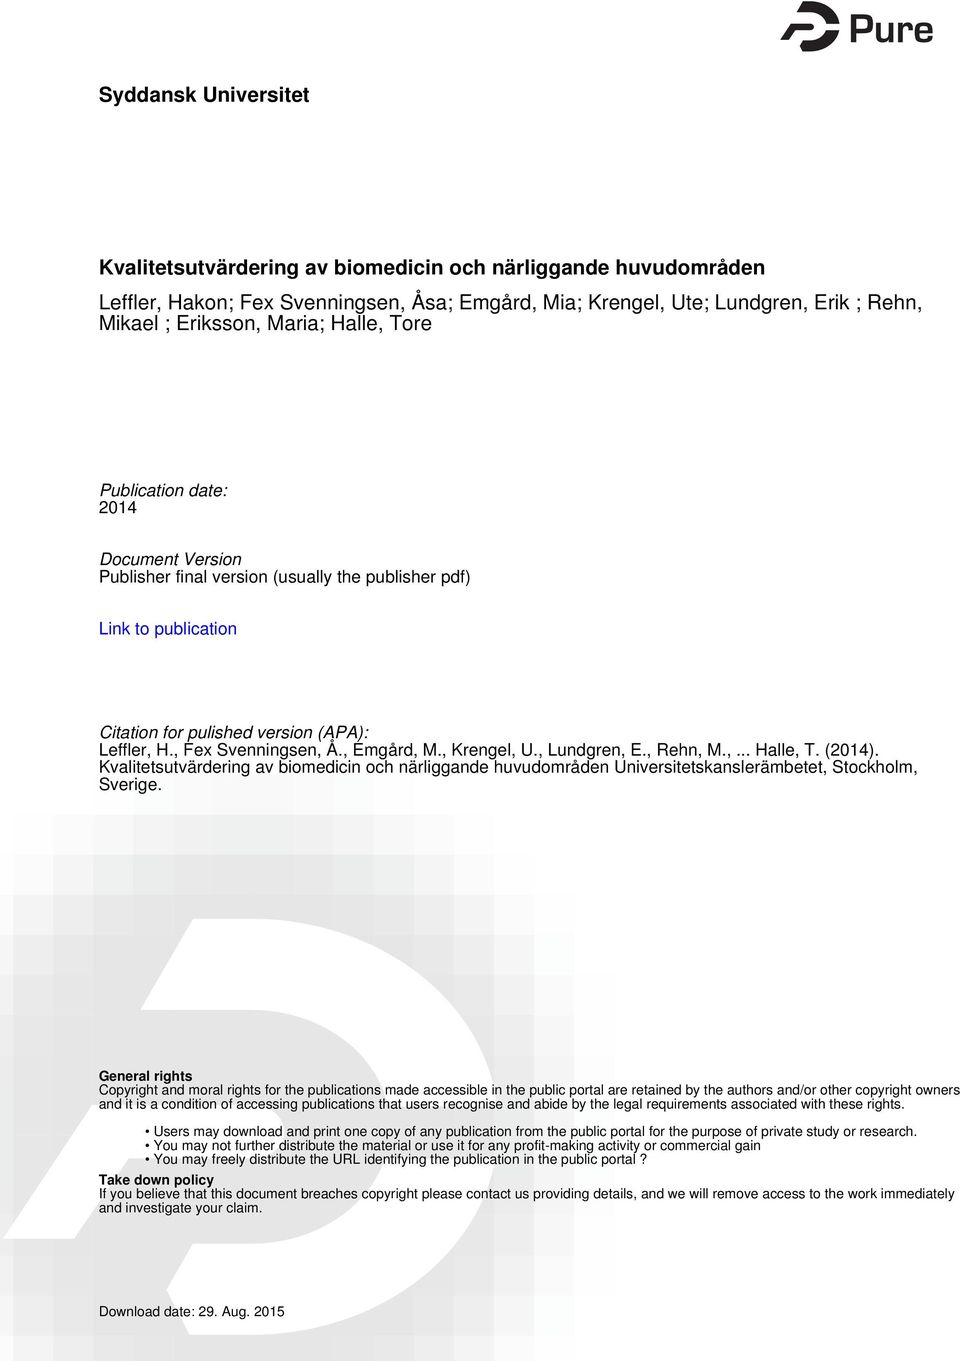 , Emgård, M., Krengel, U., Lundgren, E., Rehn, M.,... Halle, T. (2014). Kvalitetsutvärdering av biomedicin och närliggande huvudområden Universitetskanslerämbetet, Stockholm, Sverige.